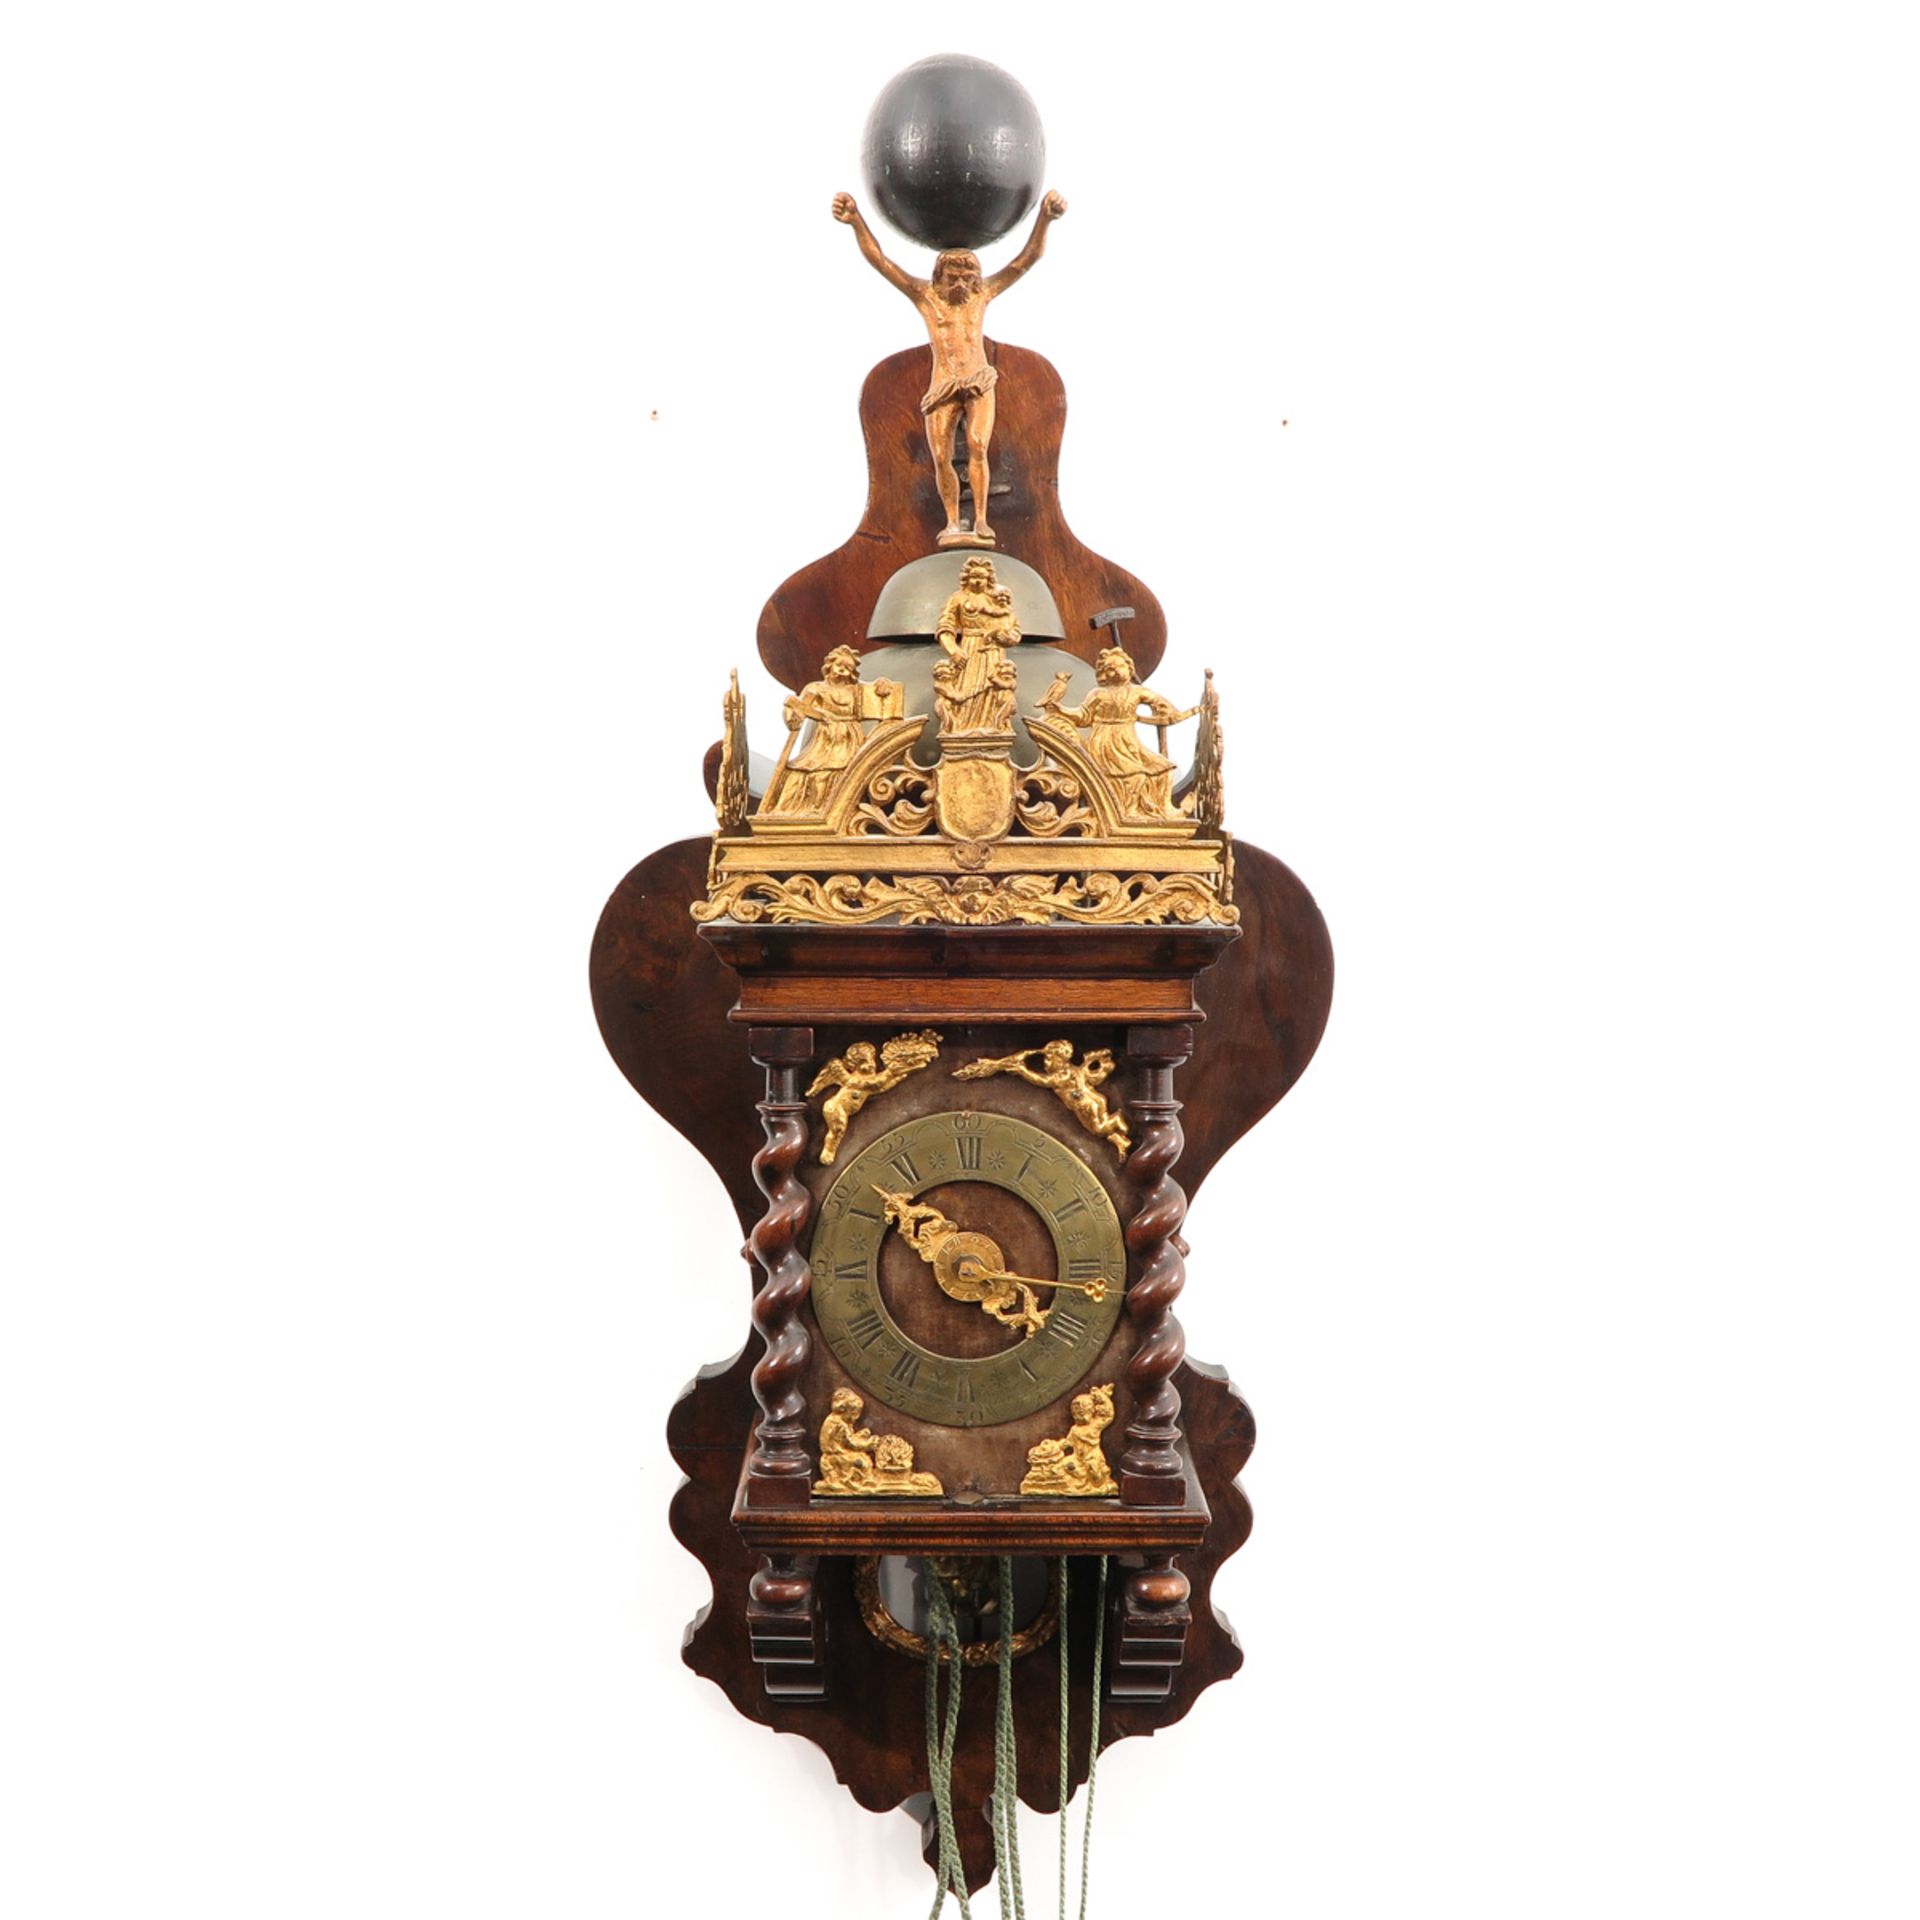 A Dutch Zaanse clock